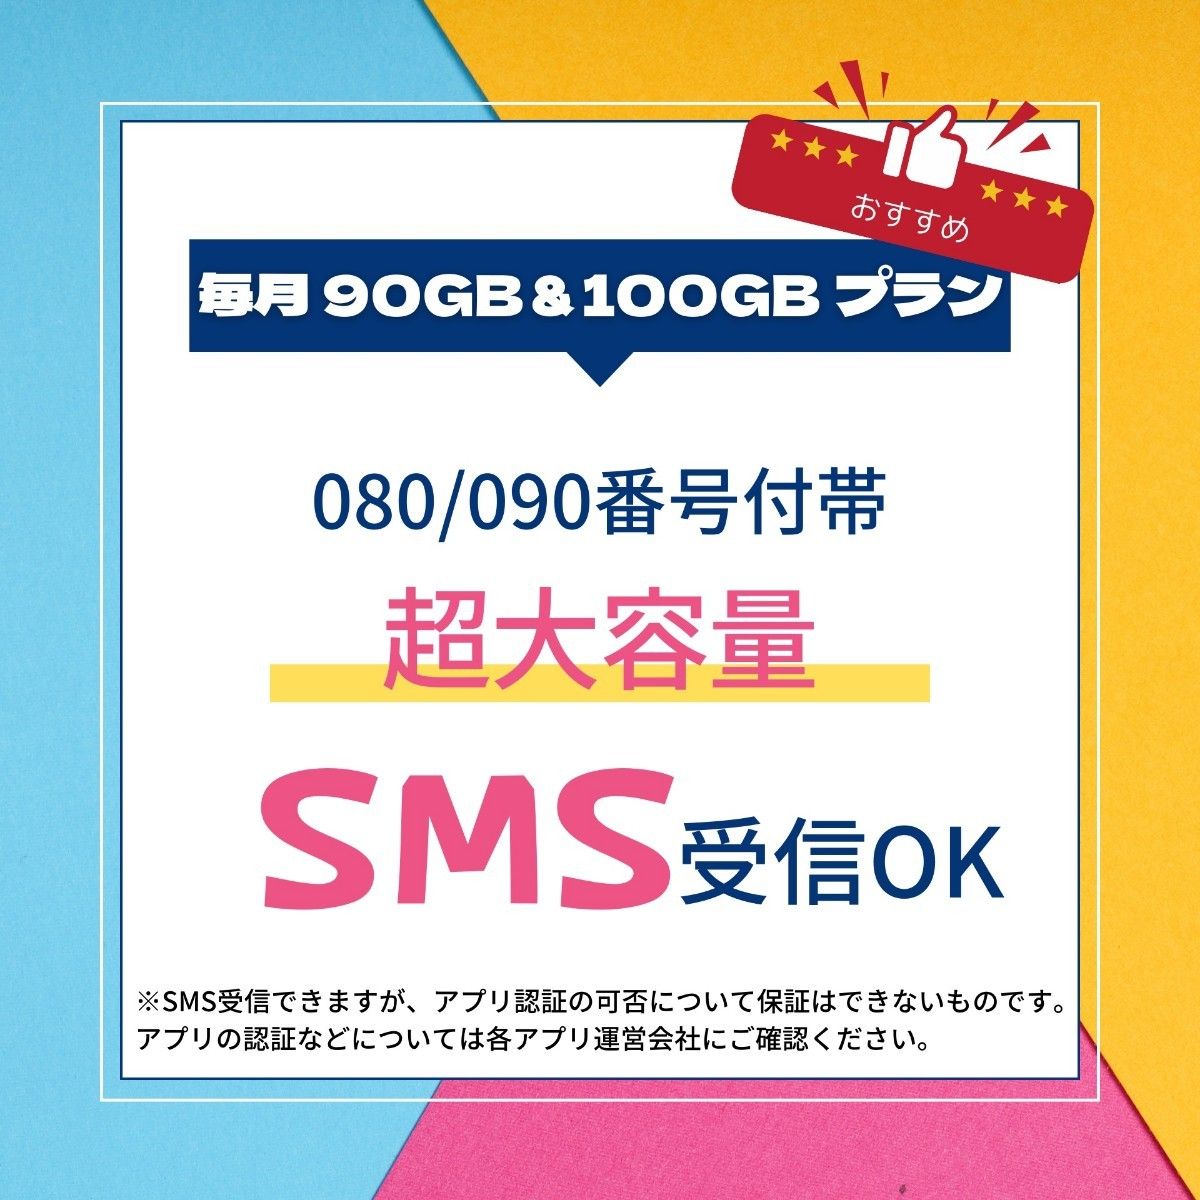 プリペイドsim【SMS受信+1年】毎月90GB★Softbank 高速通信 データSIM★Prepaid sim